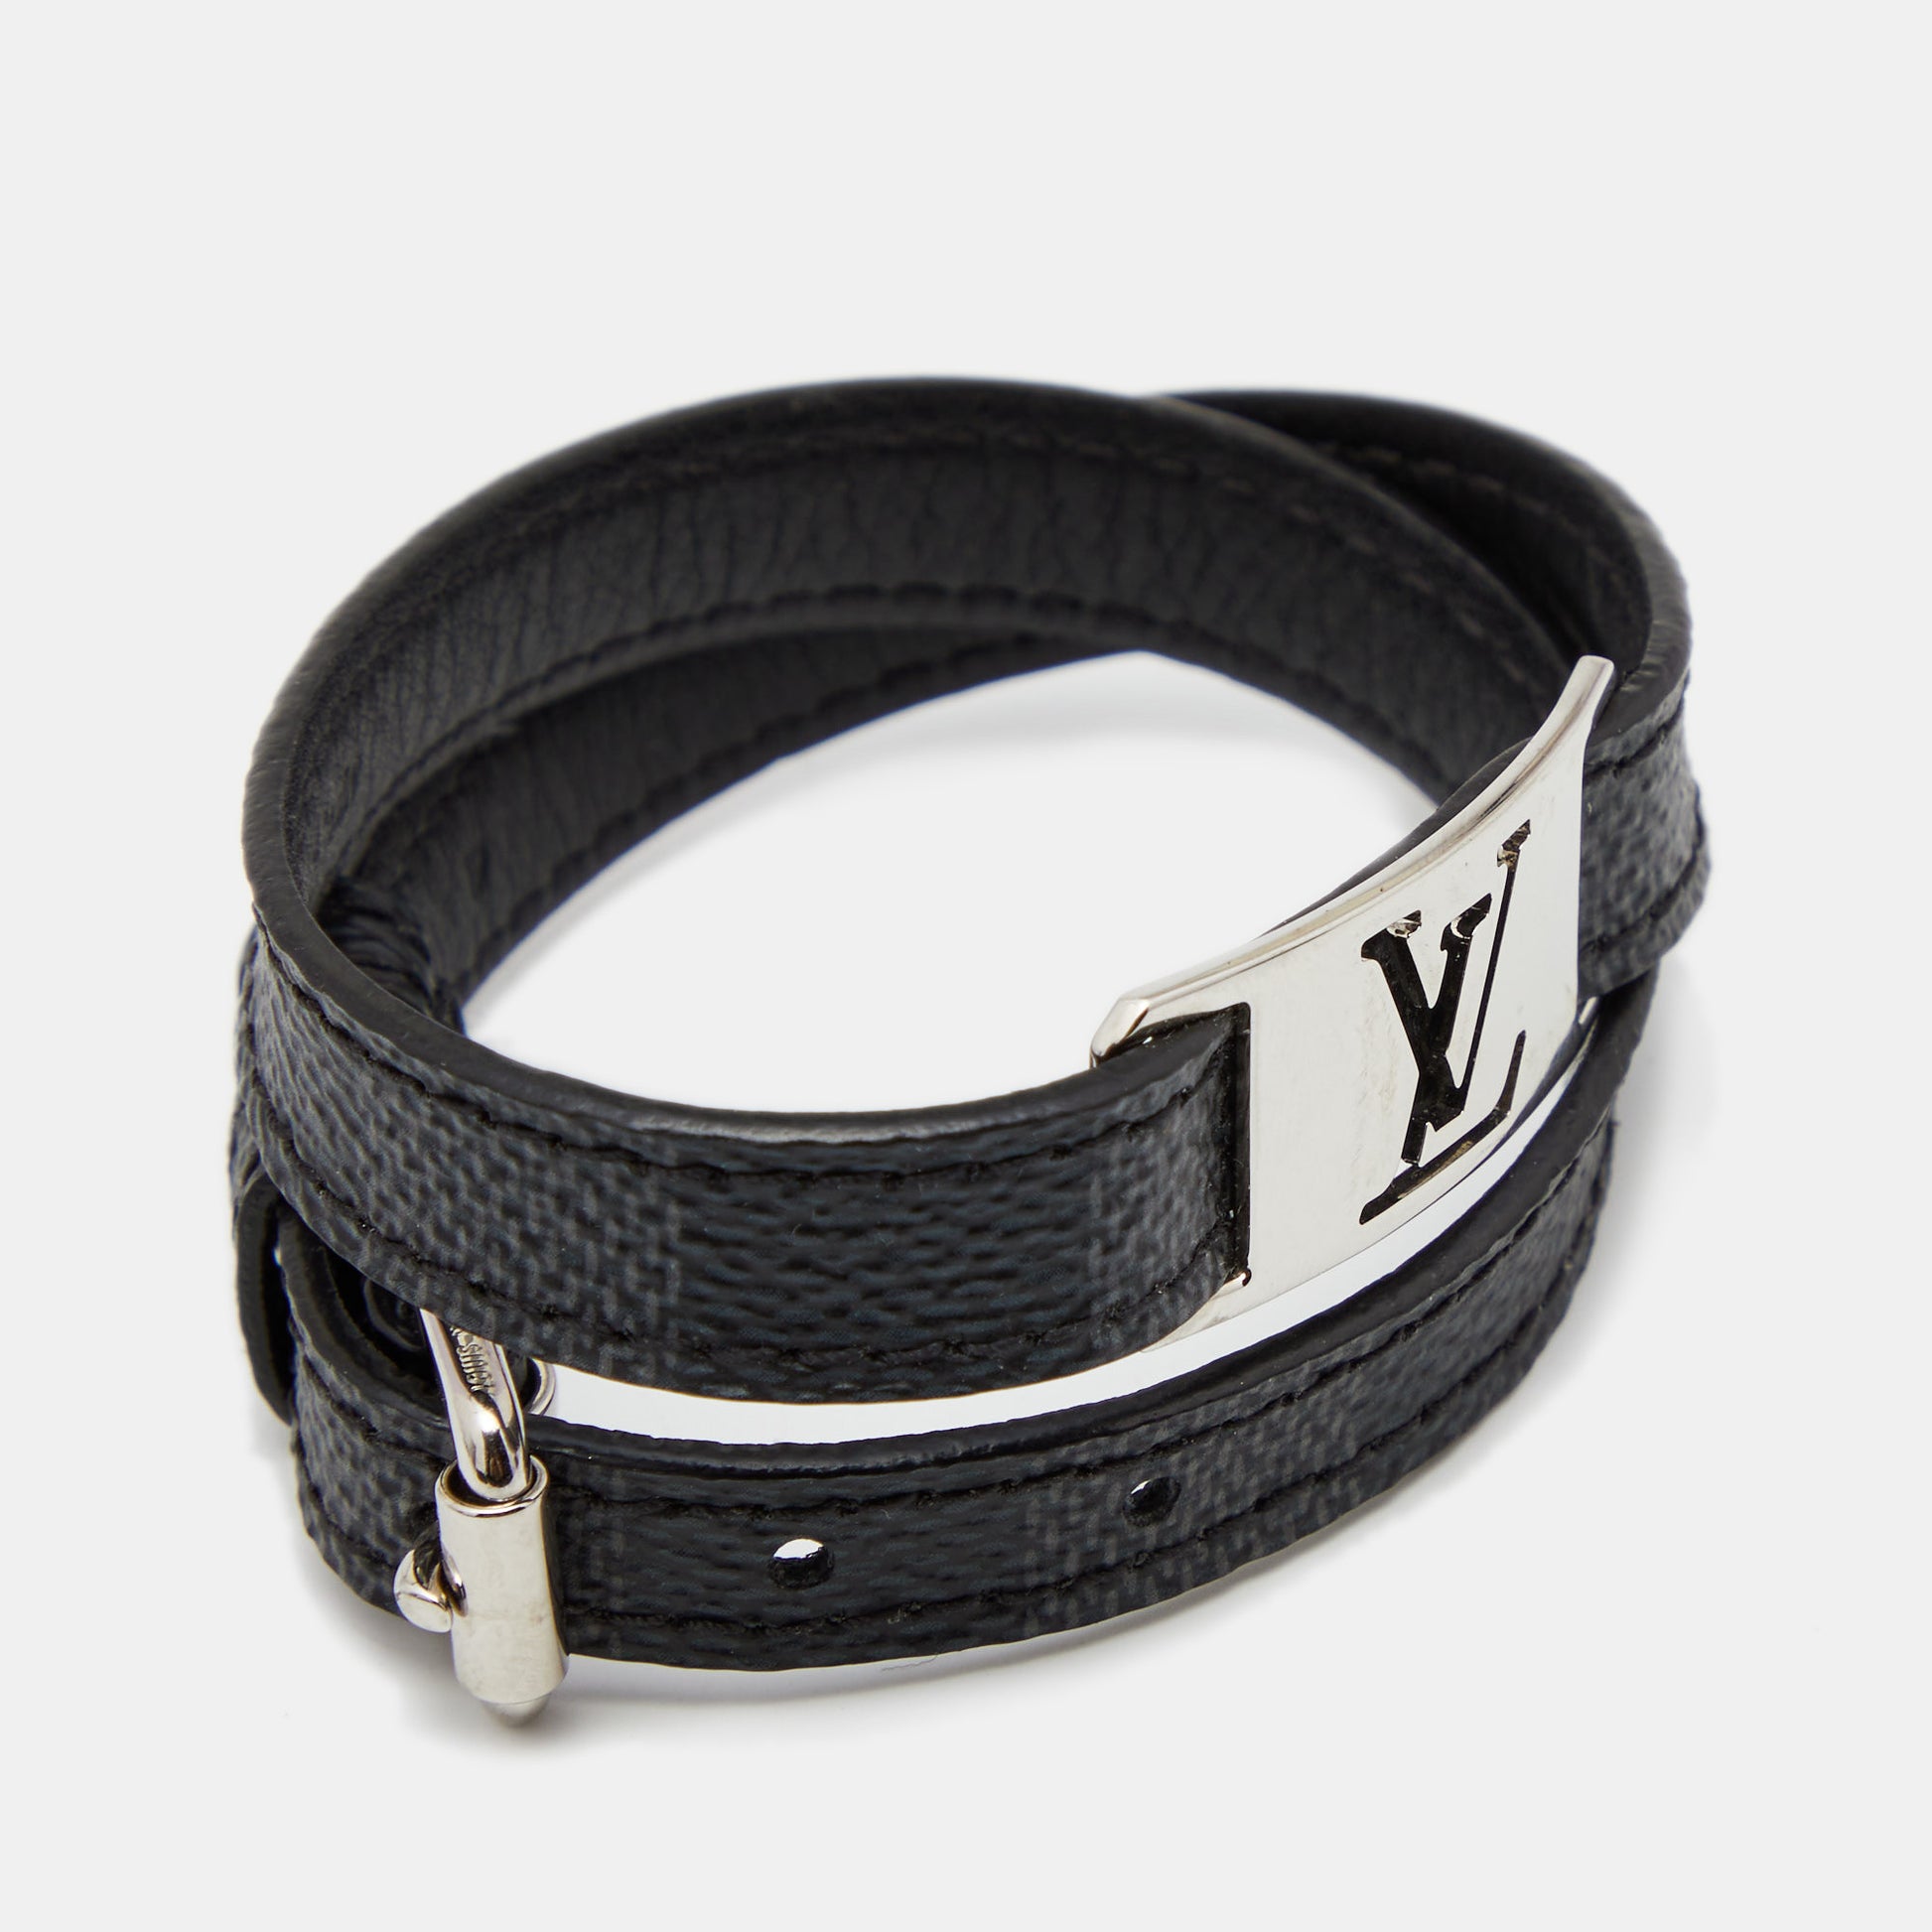 Louis Vuitton Damier Graphite Initials Belt 95 CM Louis Vuitton | The  Luxury Closet